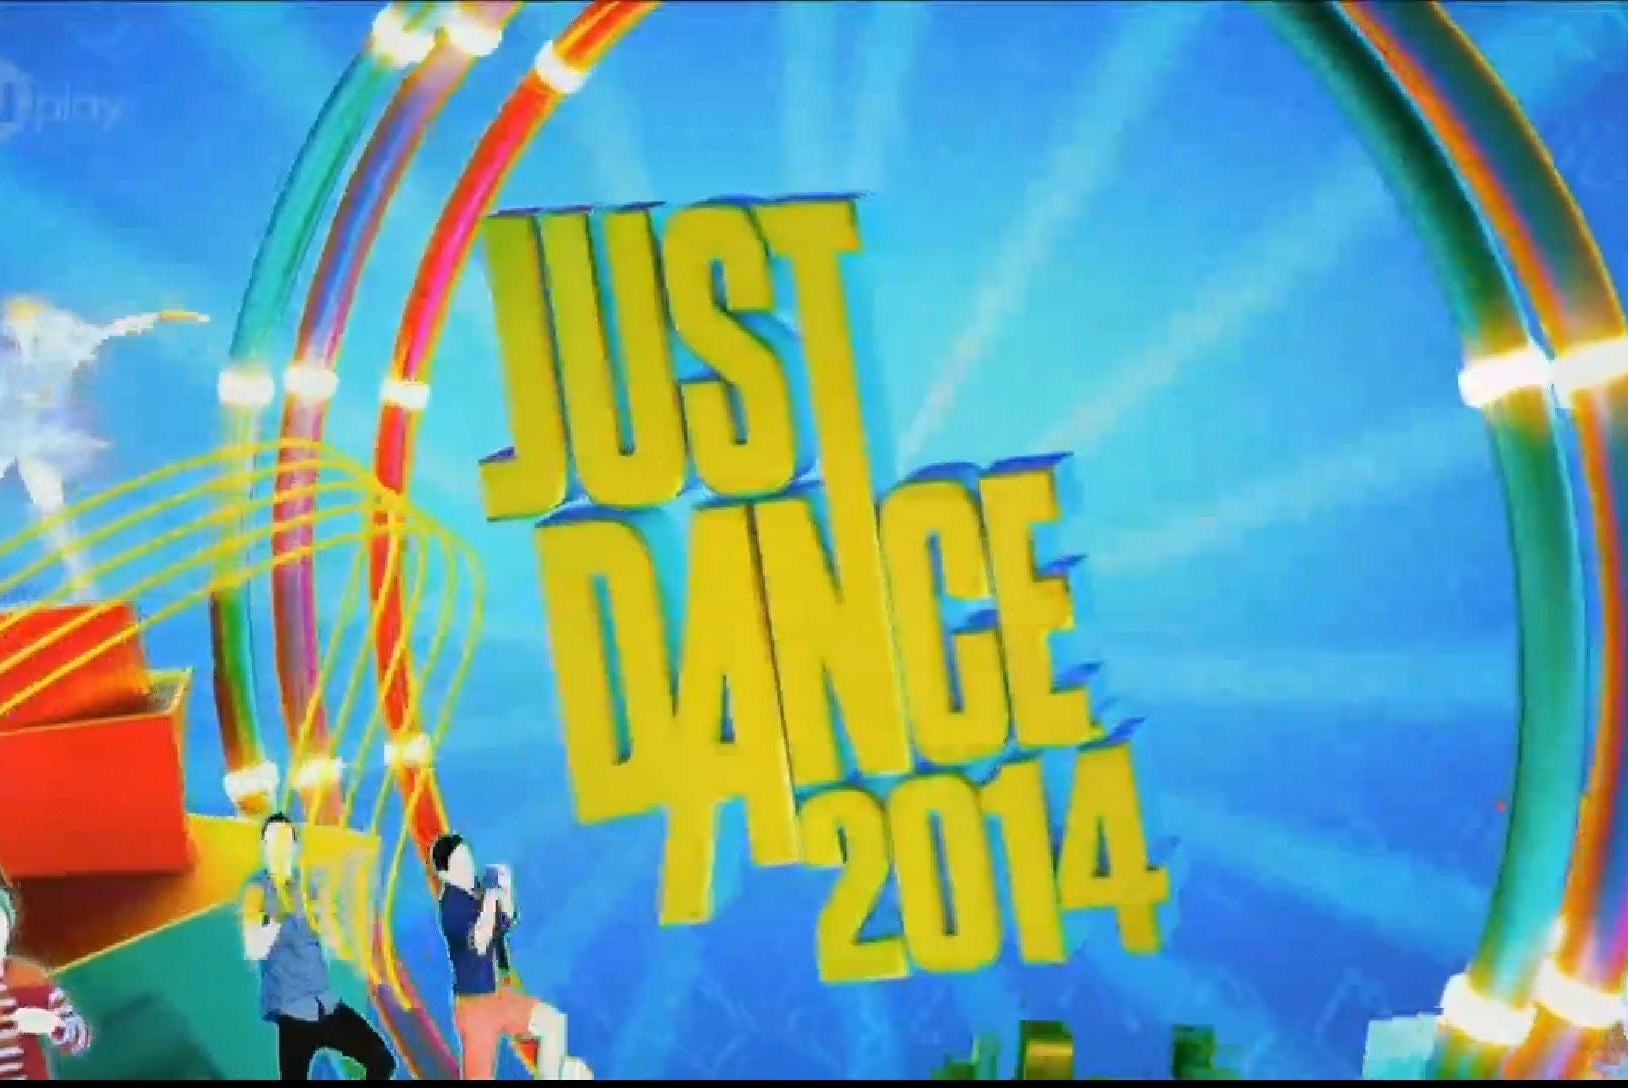 Imagem para Just Dance 2014 traz novos modos de jogo